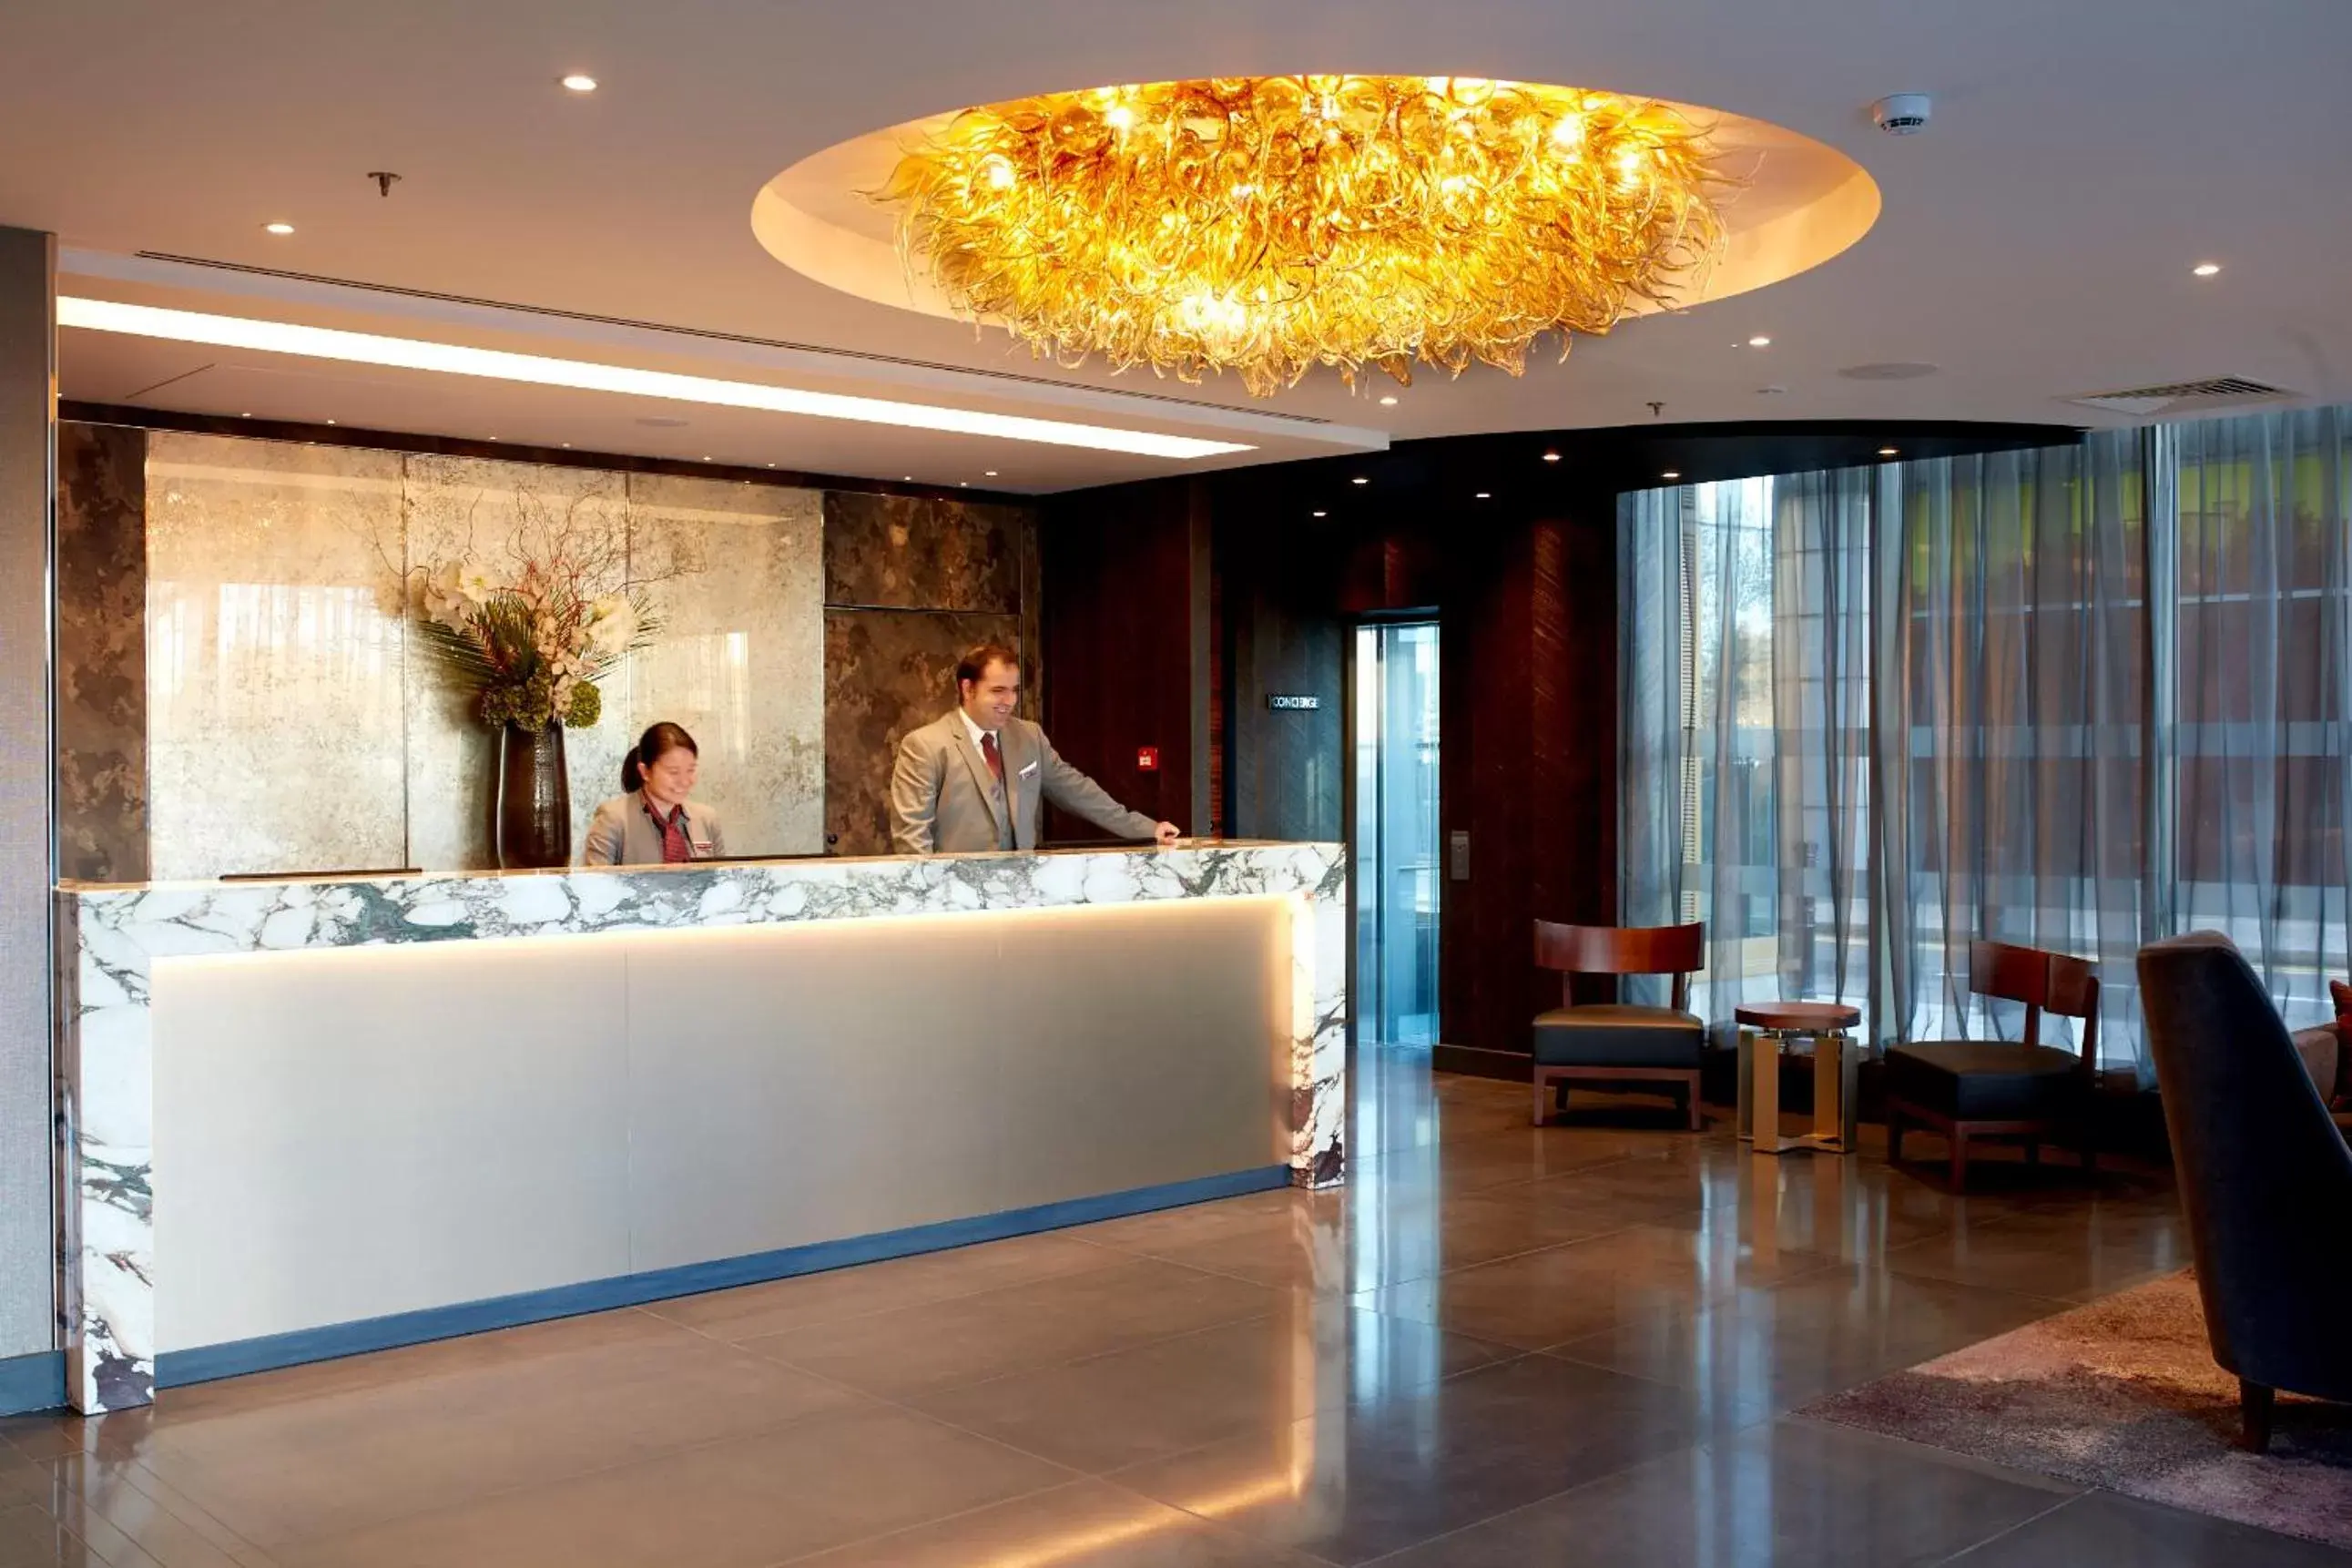 Lobby or reception, Lobby/Reception in Hyatt Regency London Albert Embankment